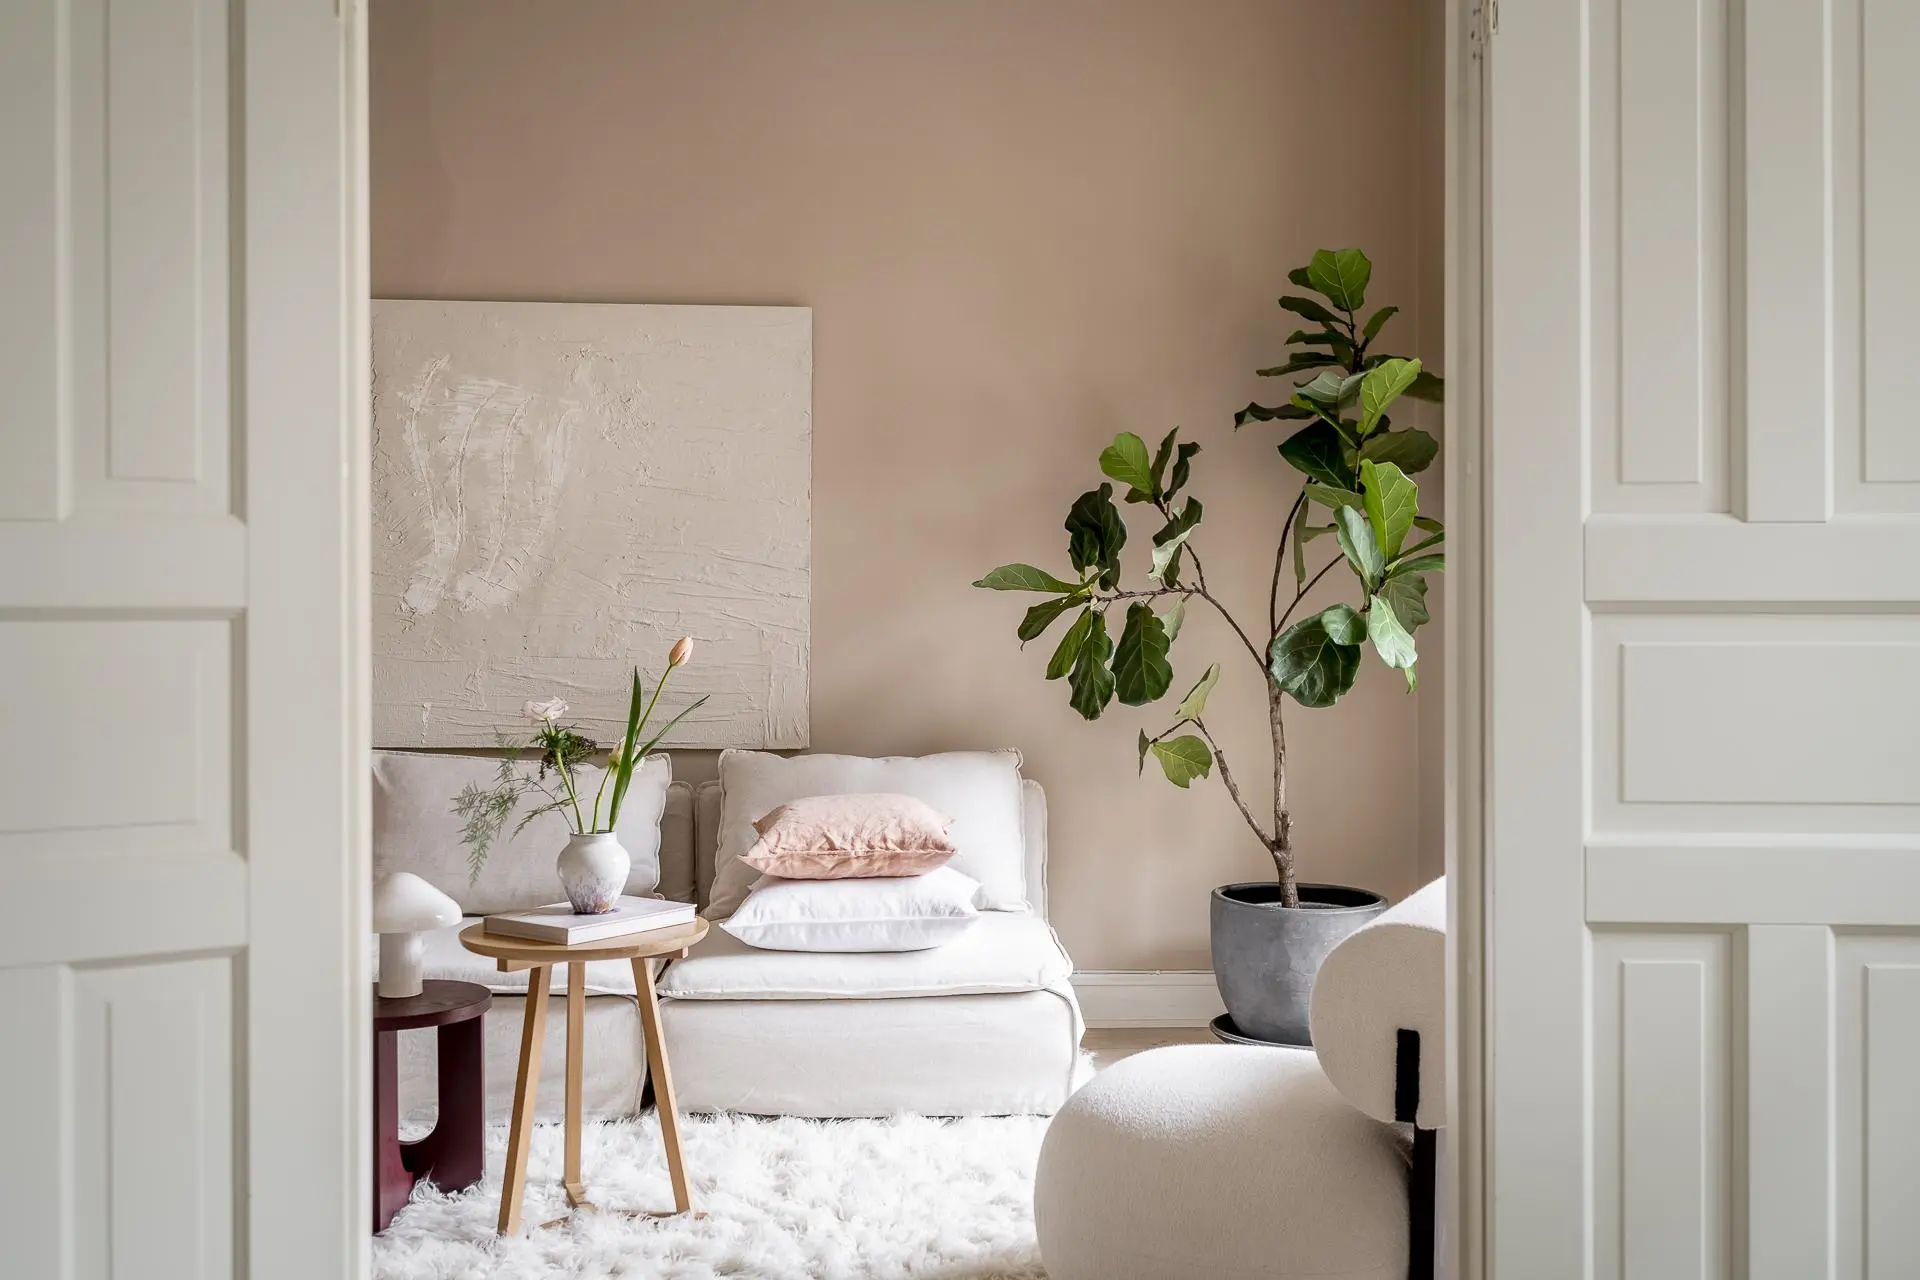 De mooie grote Vioolbladplant voegt een vleugje kleur aan deze stijlvolle beige woonkamer.